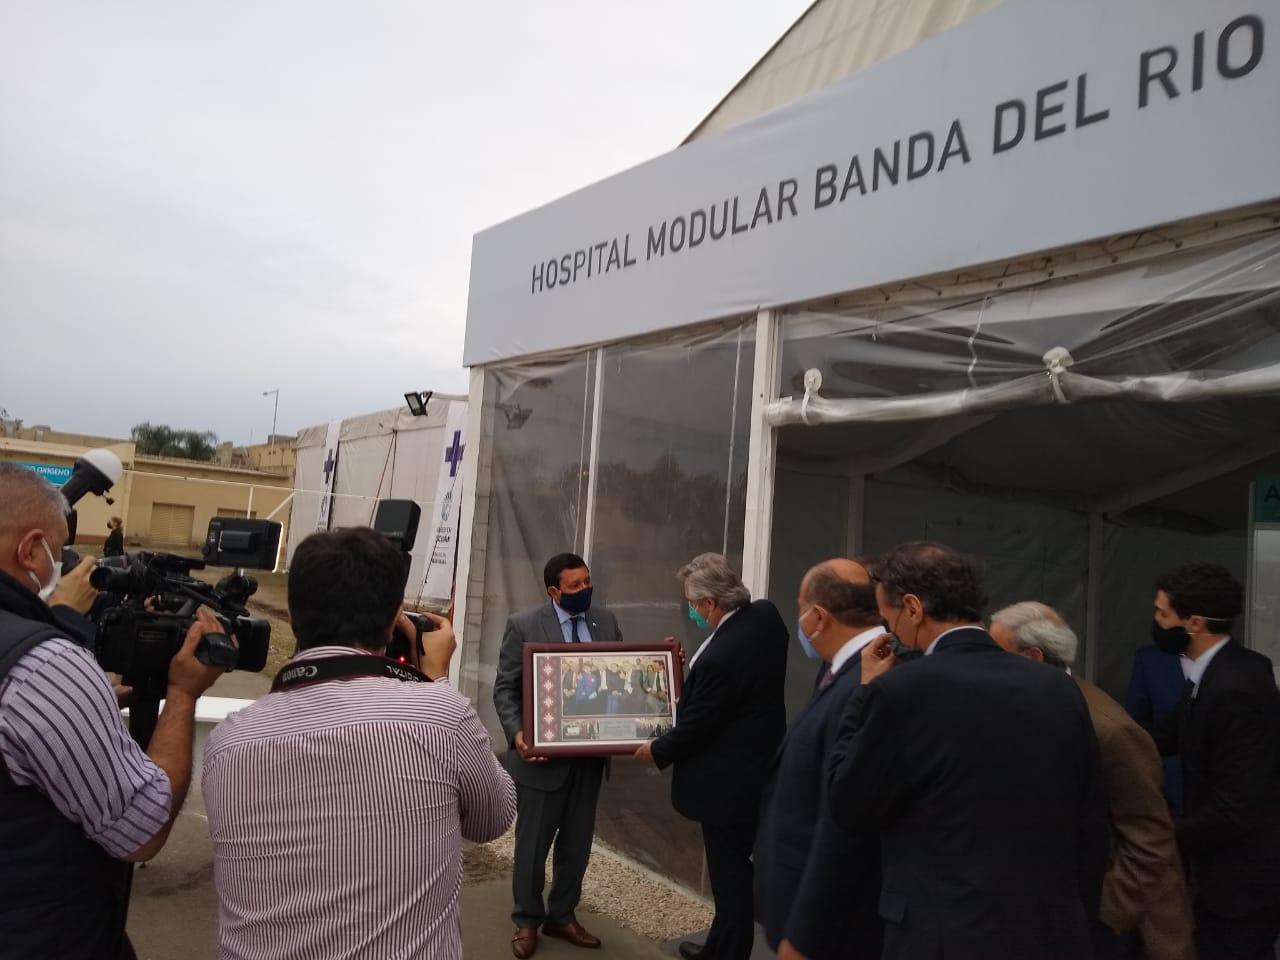 El intendente de Banda del Río Salí, Darío Monteros, le hizo un regalo al jefe de Estado. COMUNICACIÓN PÚBLICA TUCUMÁN